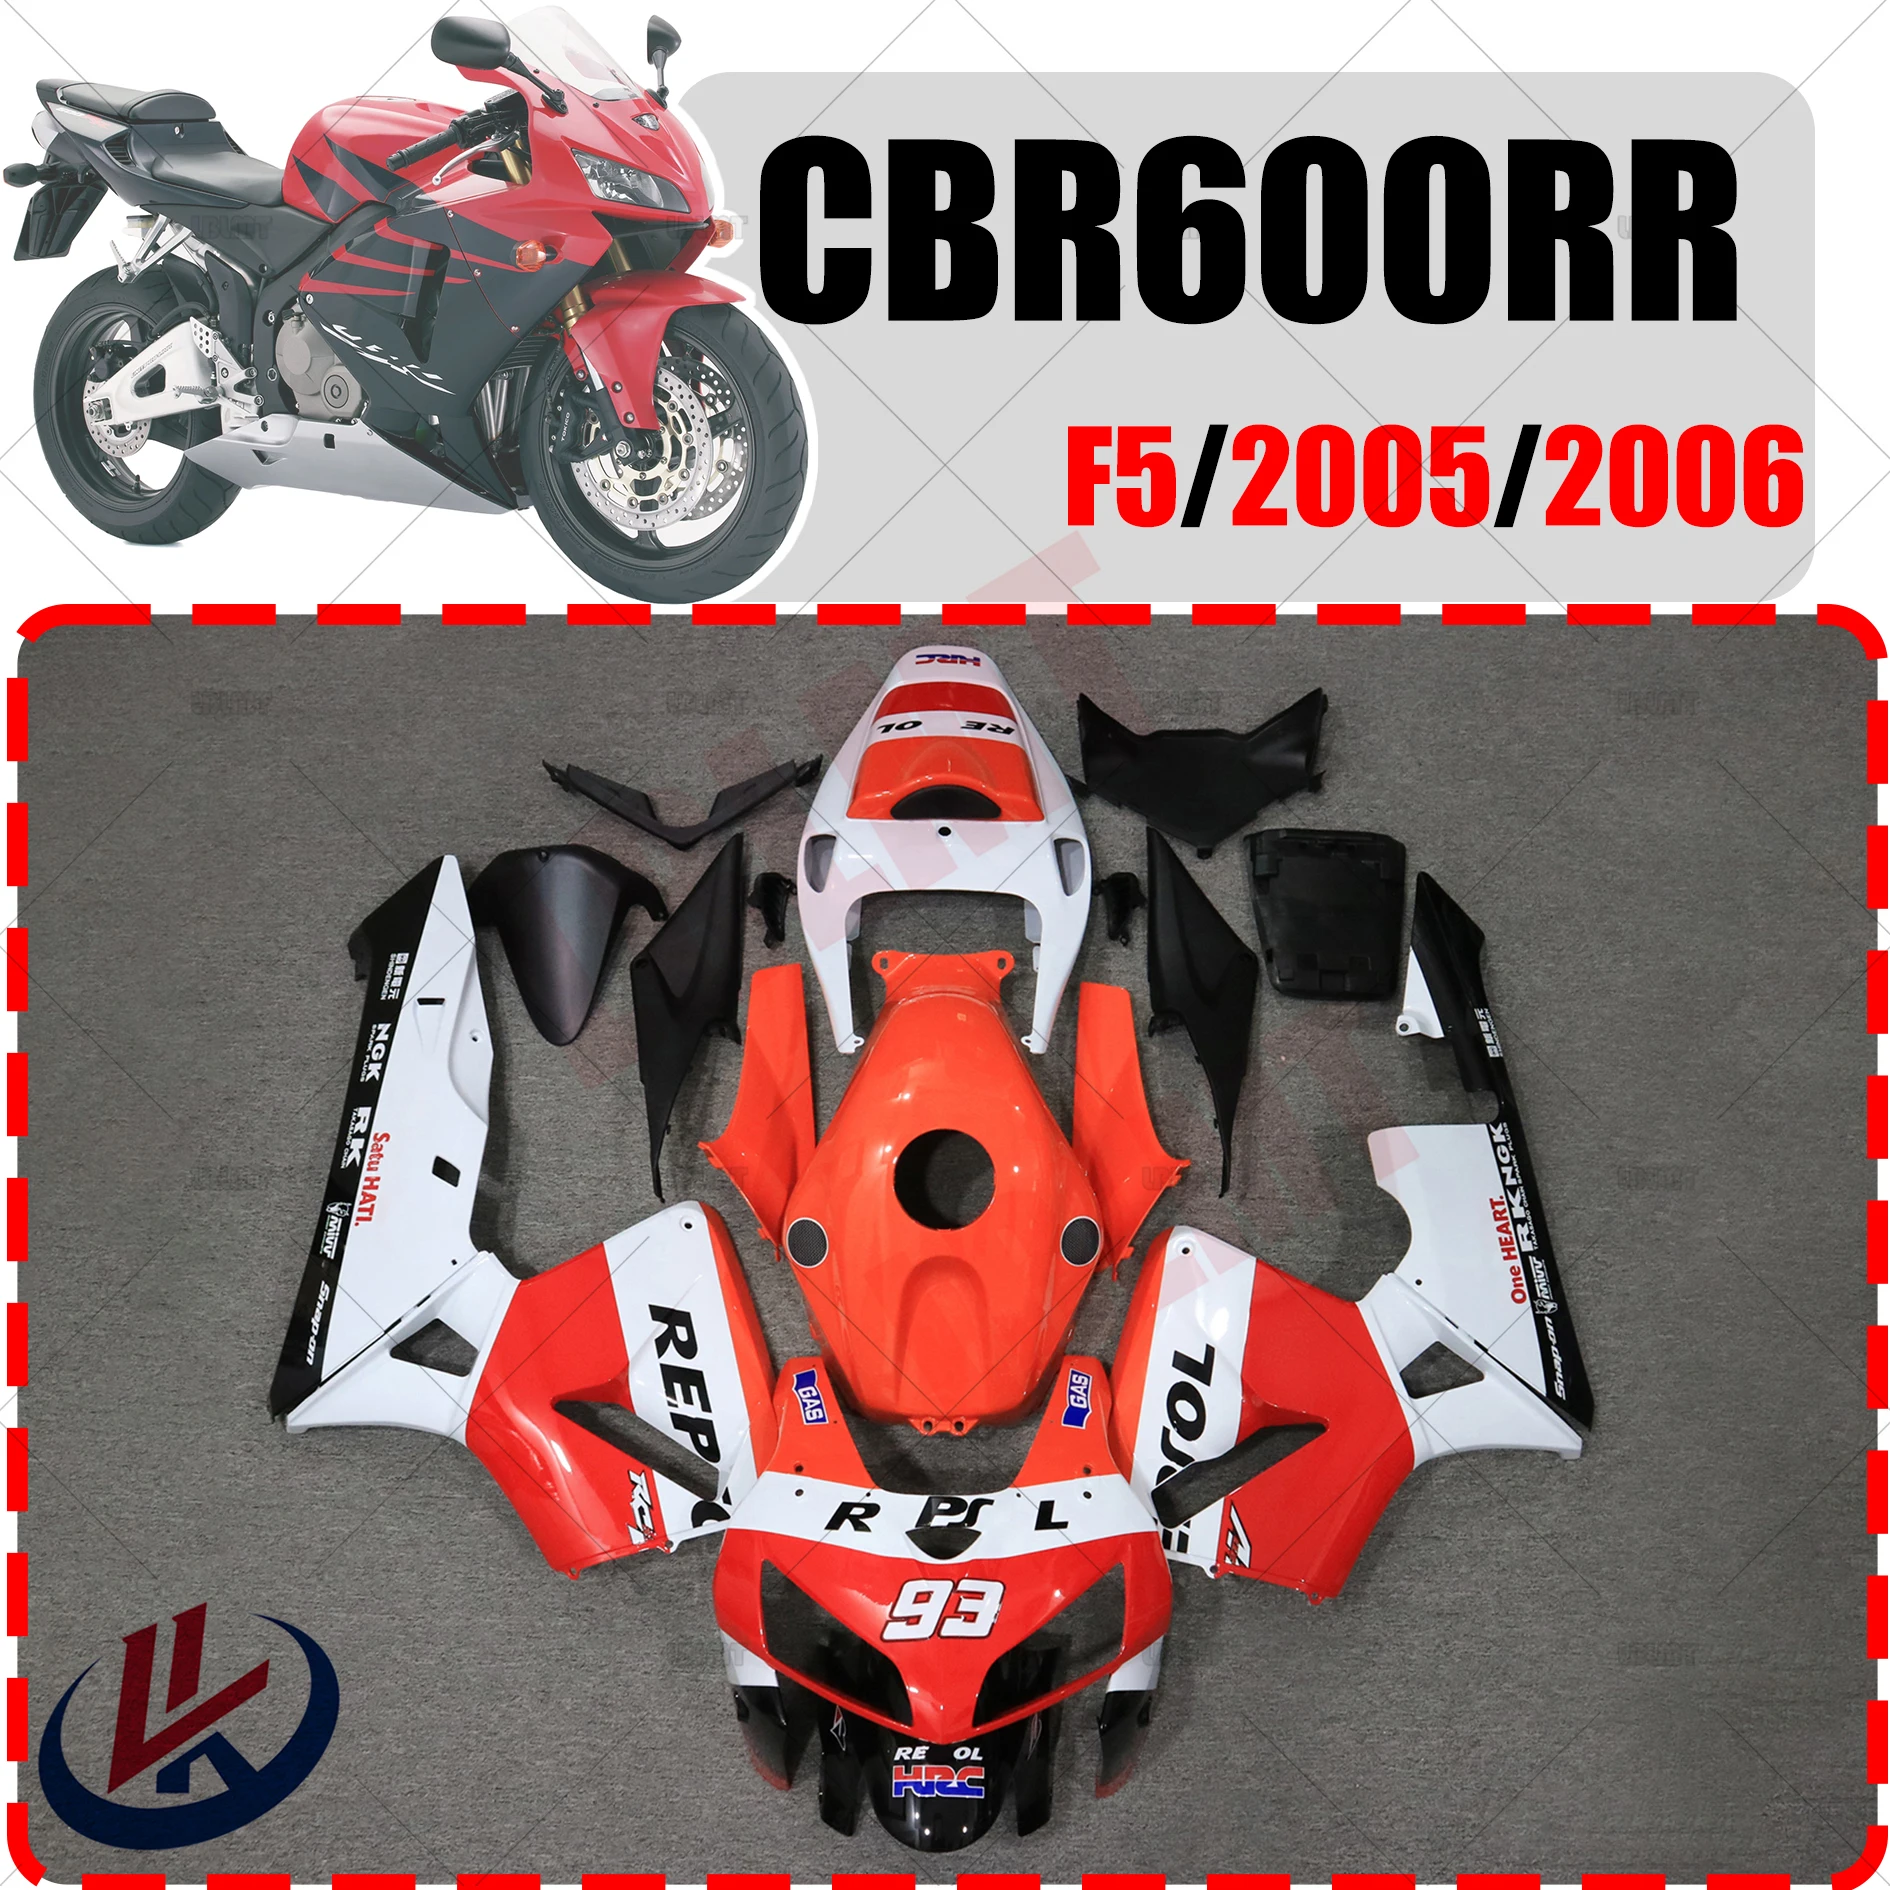 

Комплект обтекателей для мотоцикла, подходит для HONDA CBR600RR CBR 600RR 2005 2006, комплект кузова из высококачественного АБС-пластика, полный обтекатель